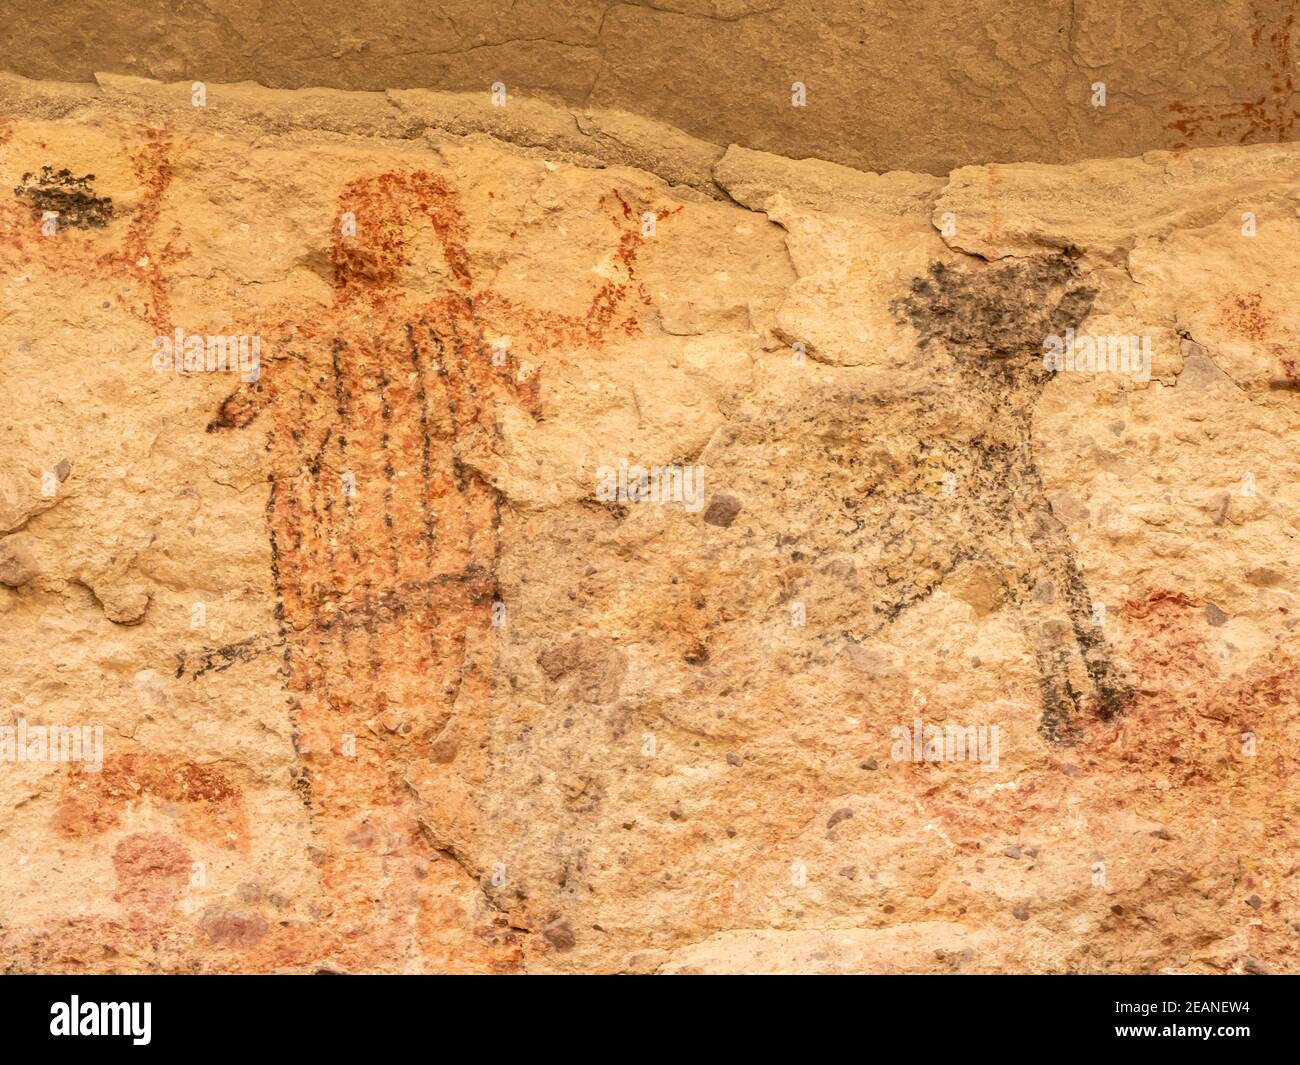 Pictogrammes d'art rupestre du peuple Cochimi, grotte de Palmarito, Sierra San Francisco, site classé au patrimoine mondial de l'UNESCO, Baja California sur, Mexique Banque D'Images